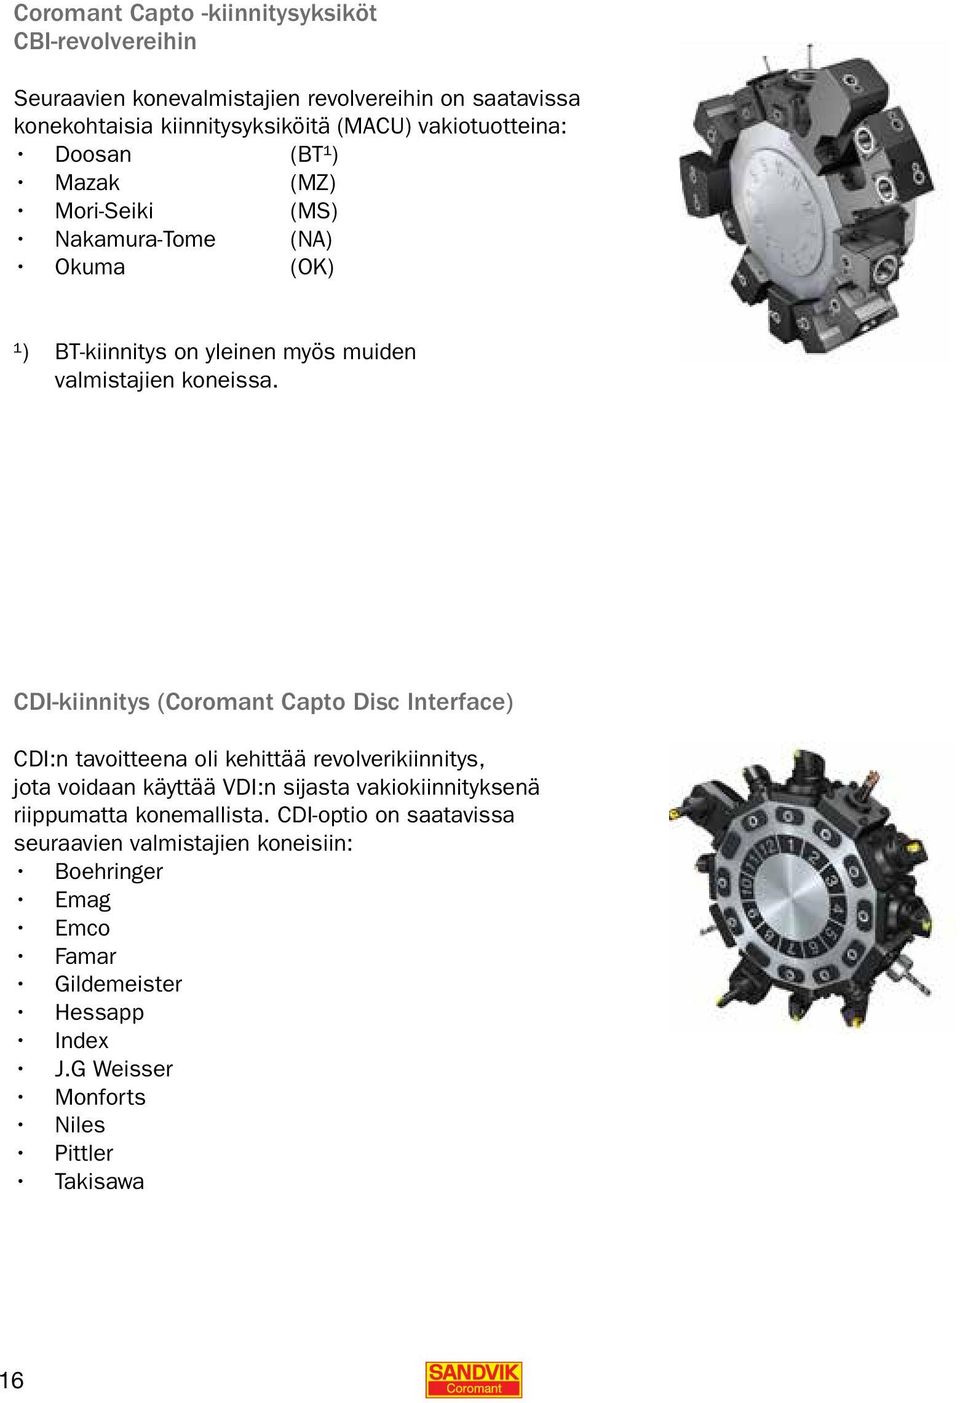 CDI-kiinnitys (Coromant Capto Disc Interface) CDI:n tavoitteena oli kehittää revolverikiinnitys, jota voidaan käyttää VDI:n sijasta vakiokiinnityksenä